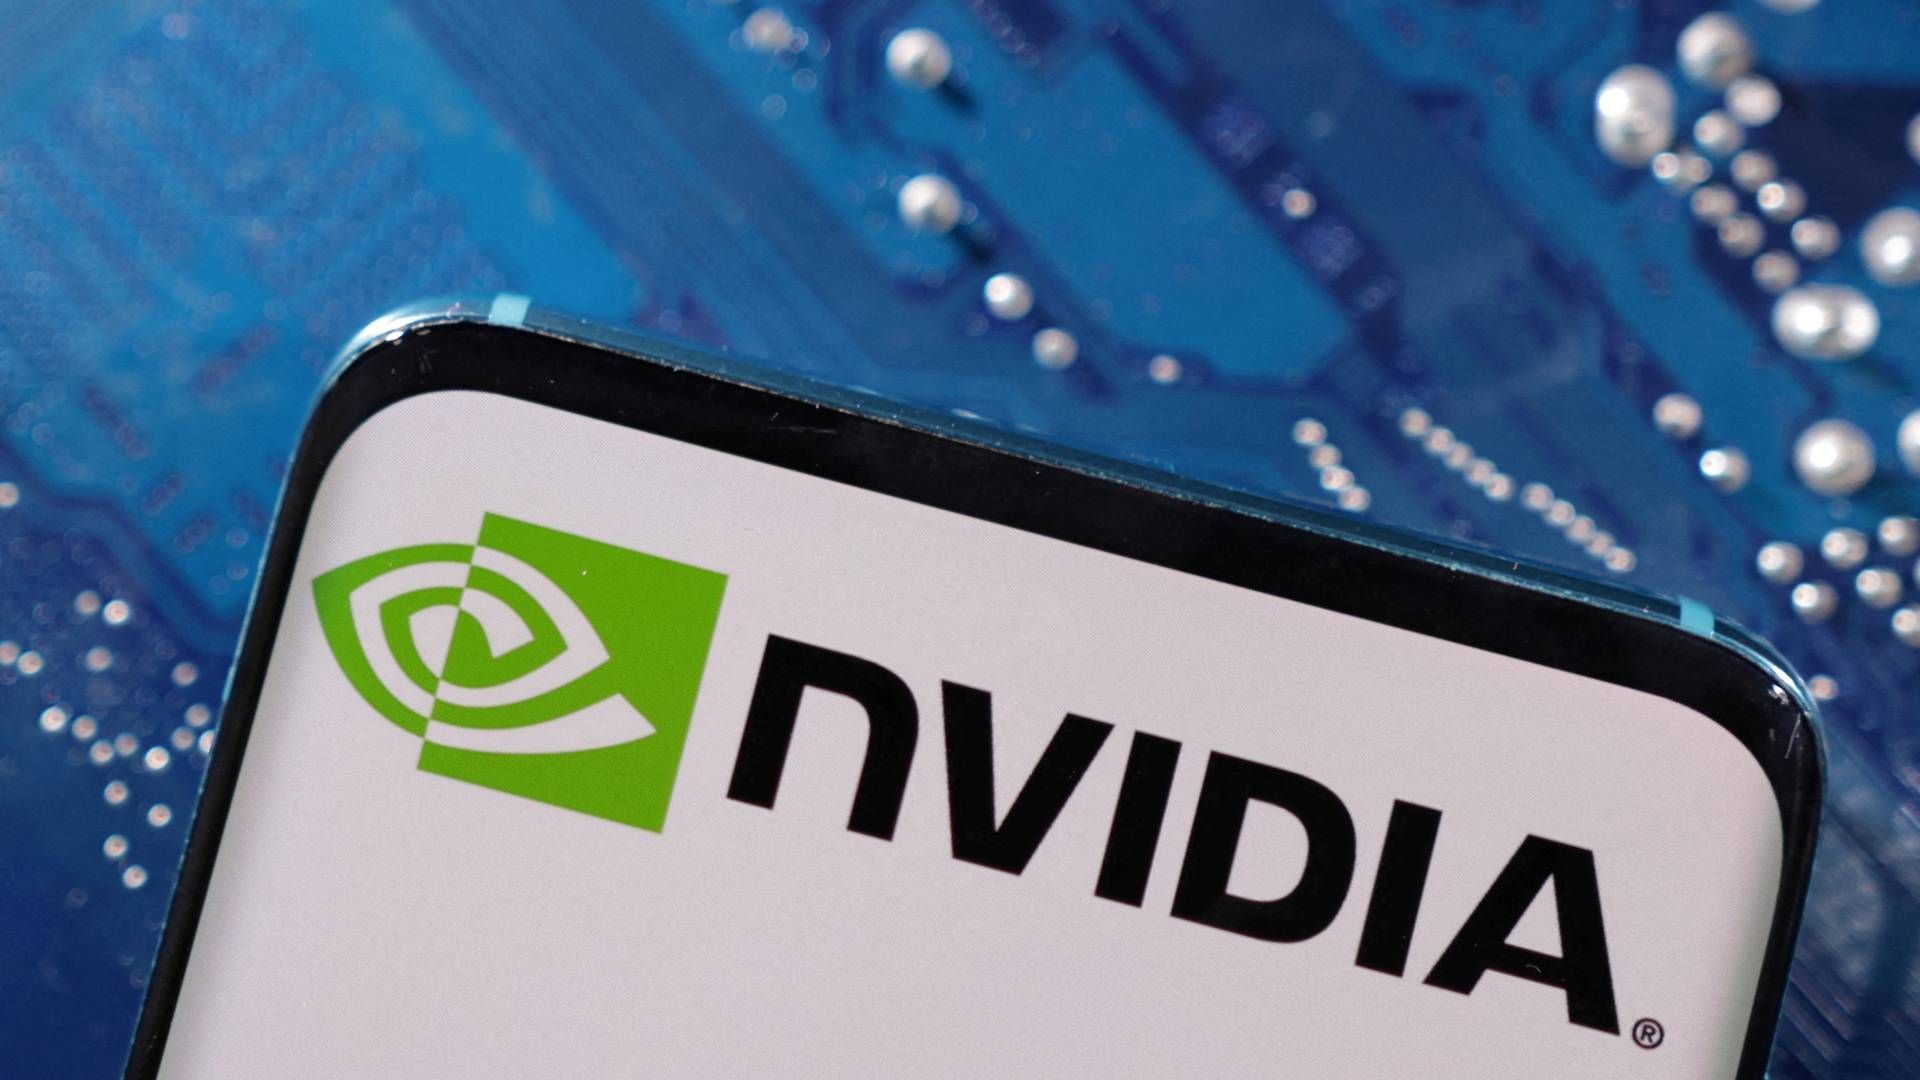 Chipgiganten Nvidia har været en af de mest hypede aktier de seneste år som følge af opblomstringen af kunstig intelligens. Aktien er på fem år steget 3100 pct. | Foto: Dado Ruvic